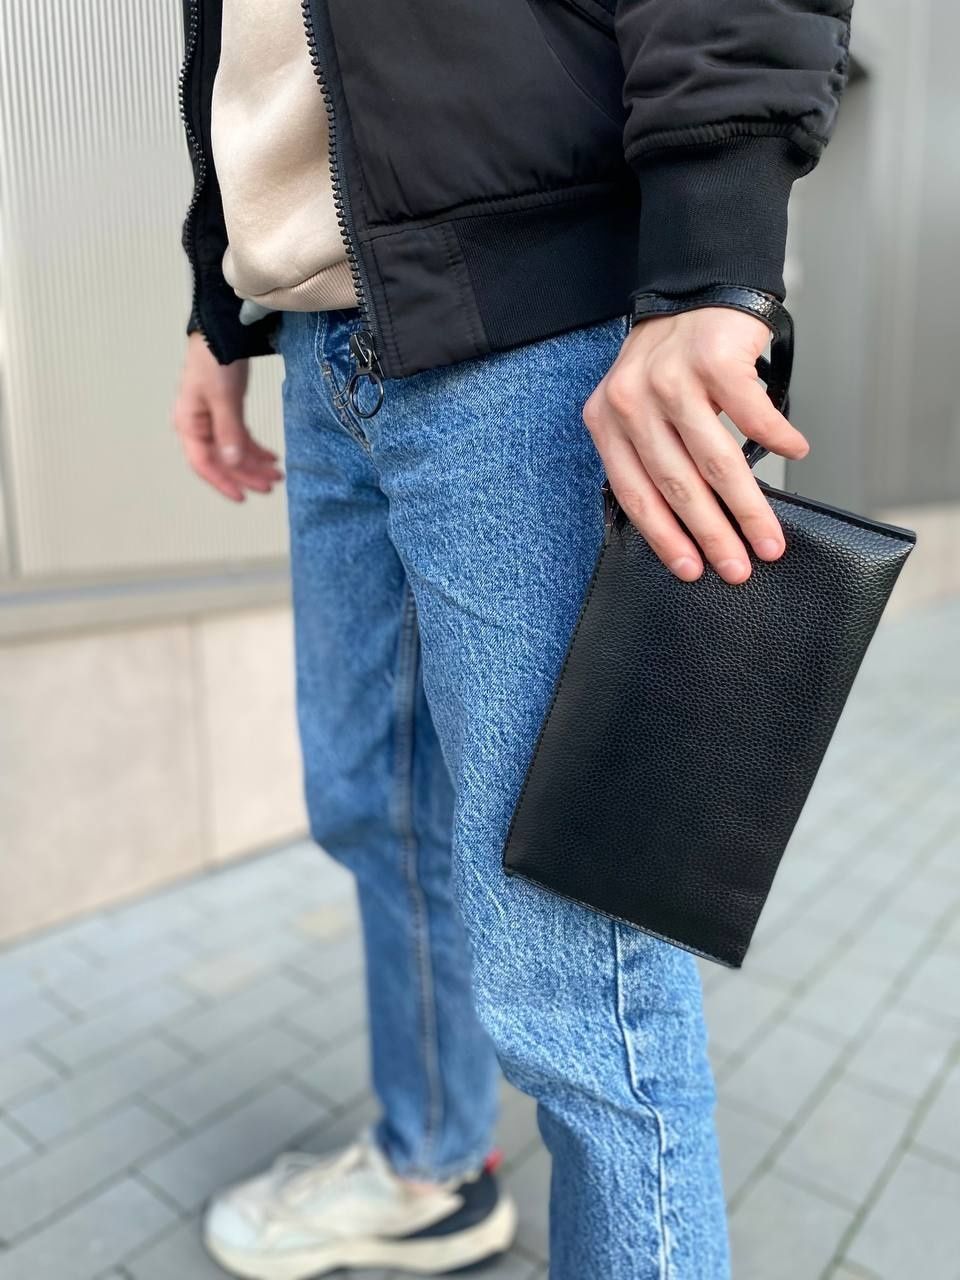 Мужская барсетка/портмоне в черном класическом цвете.